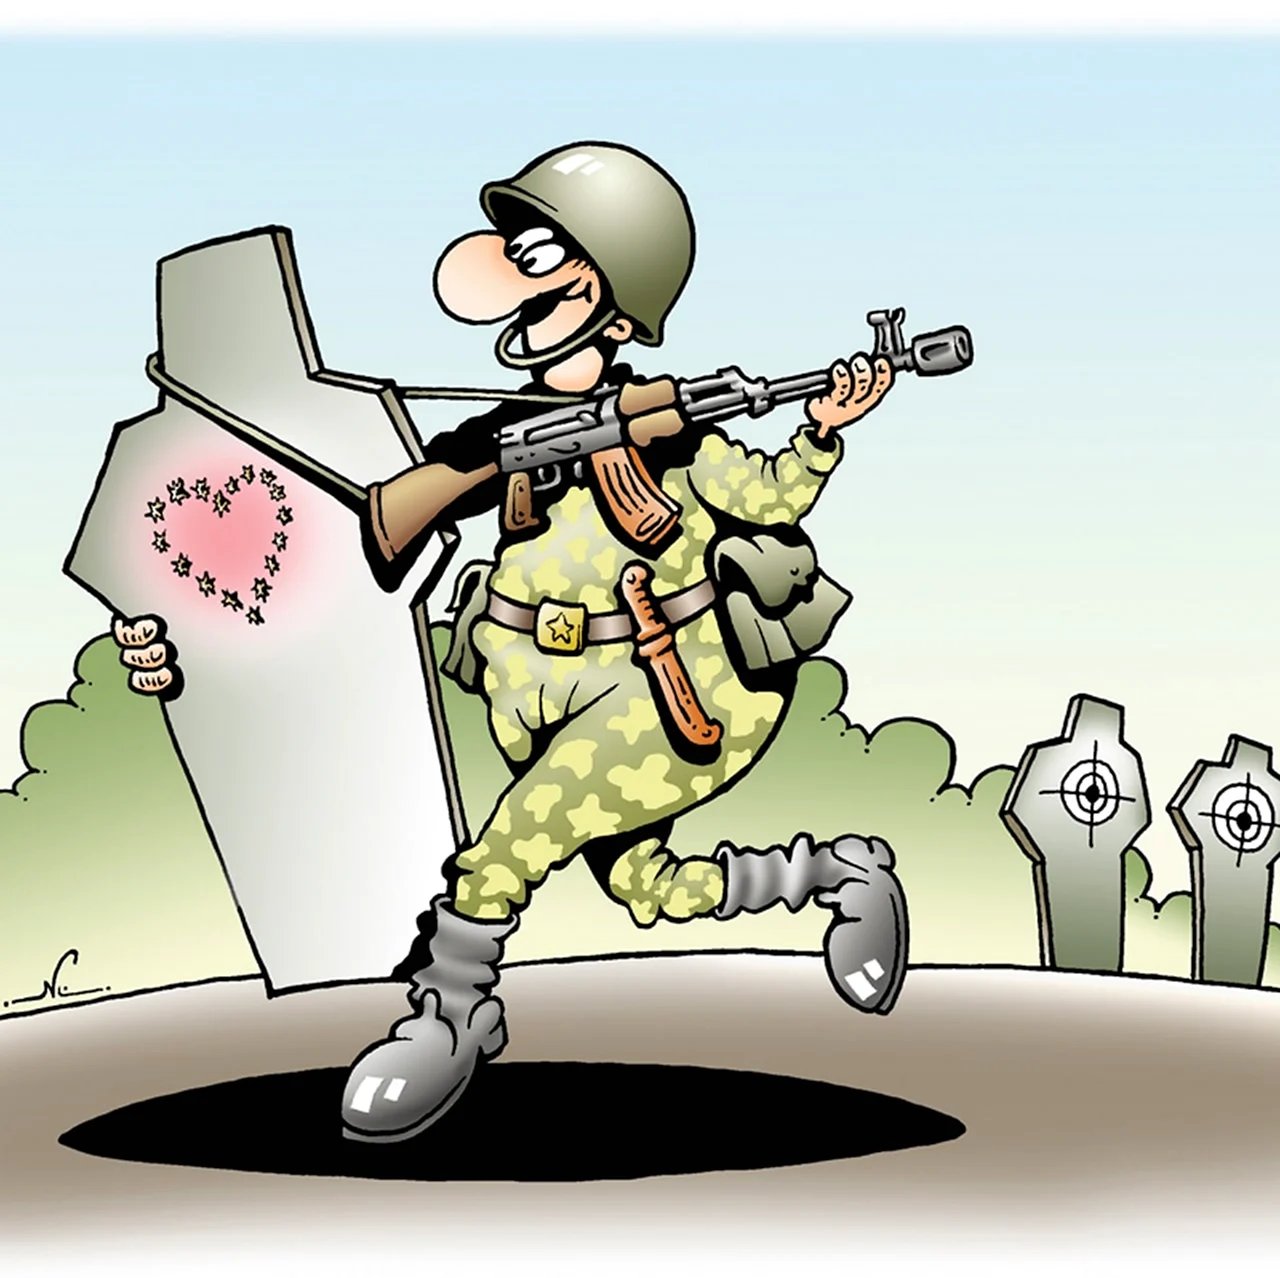 Военные карикатуры. Прикольная картинка